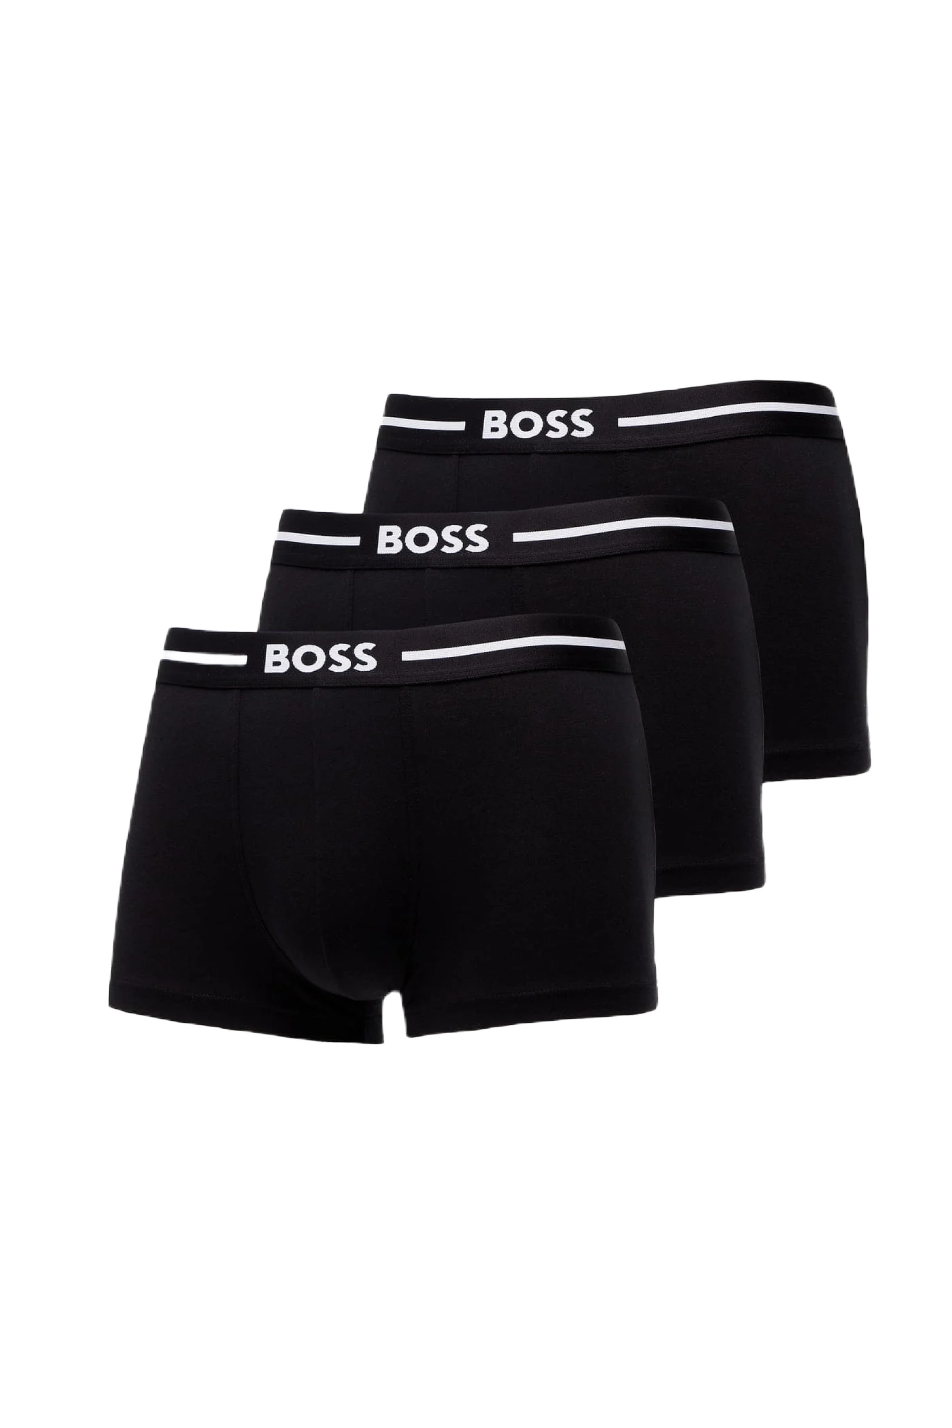 Boss 3 Pack Men's Trunk